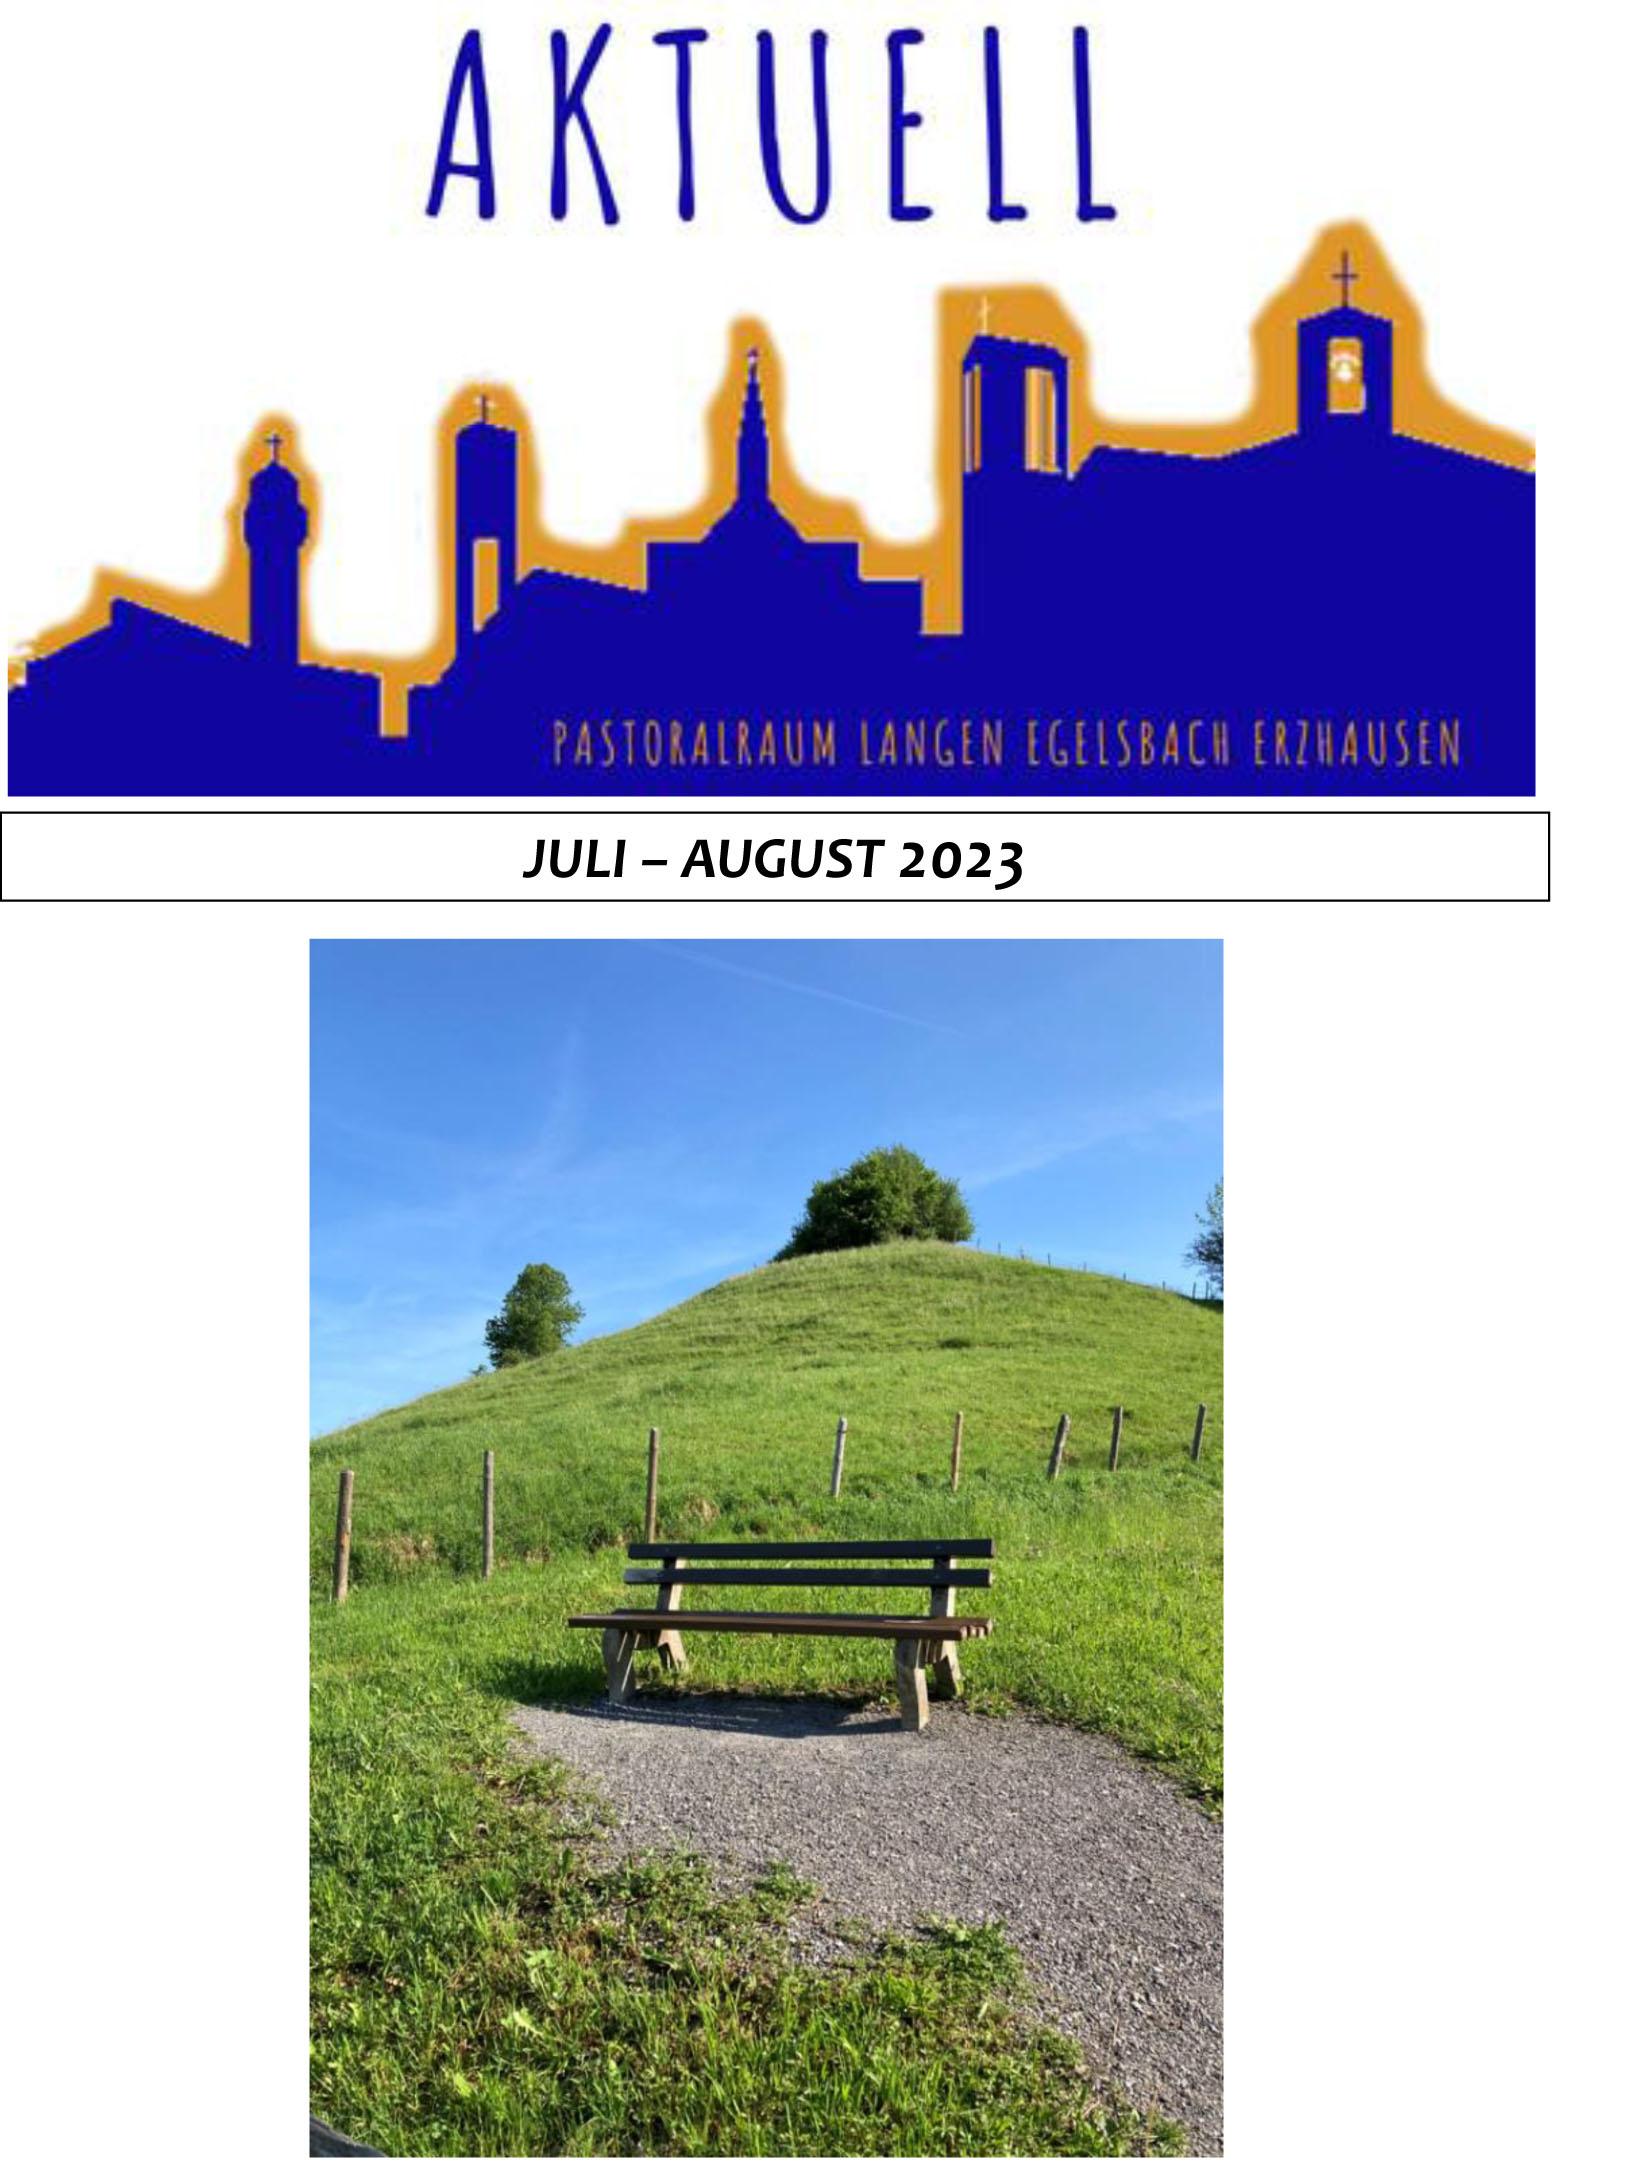 Aktuell Juli und August 2023 (c) Pastoralraum Langen-Egelsbach-Erzhausen